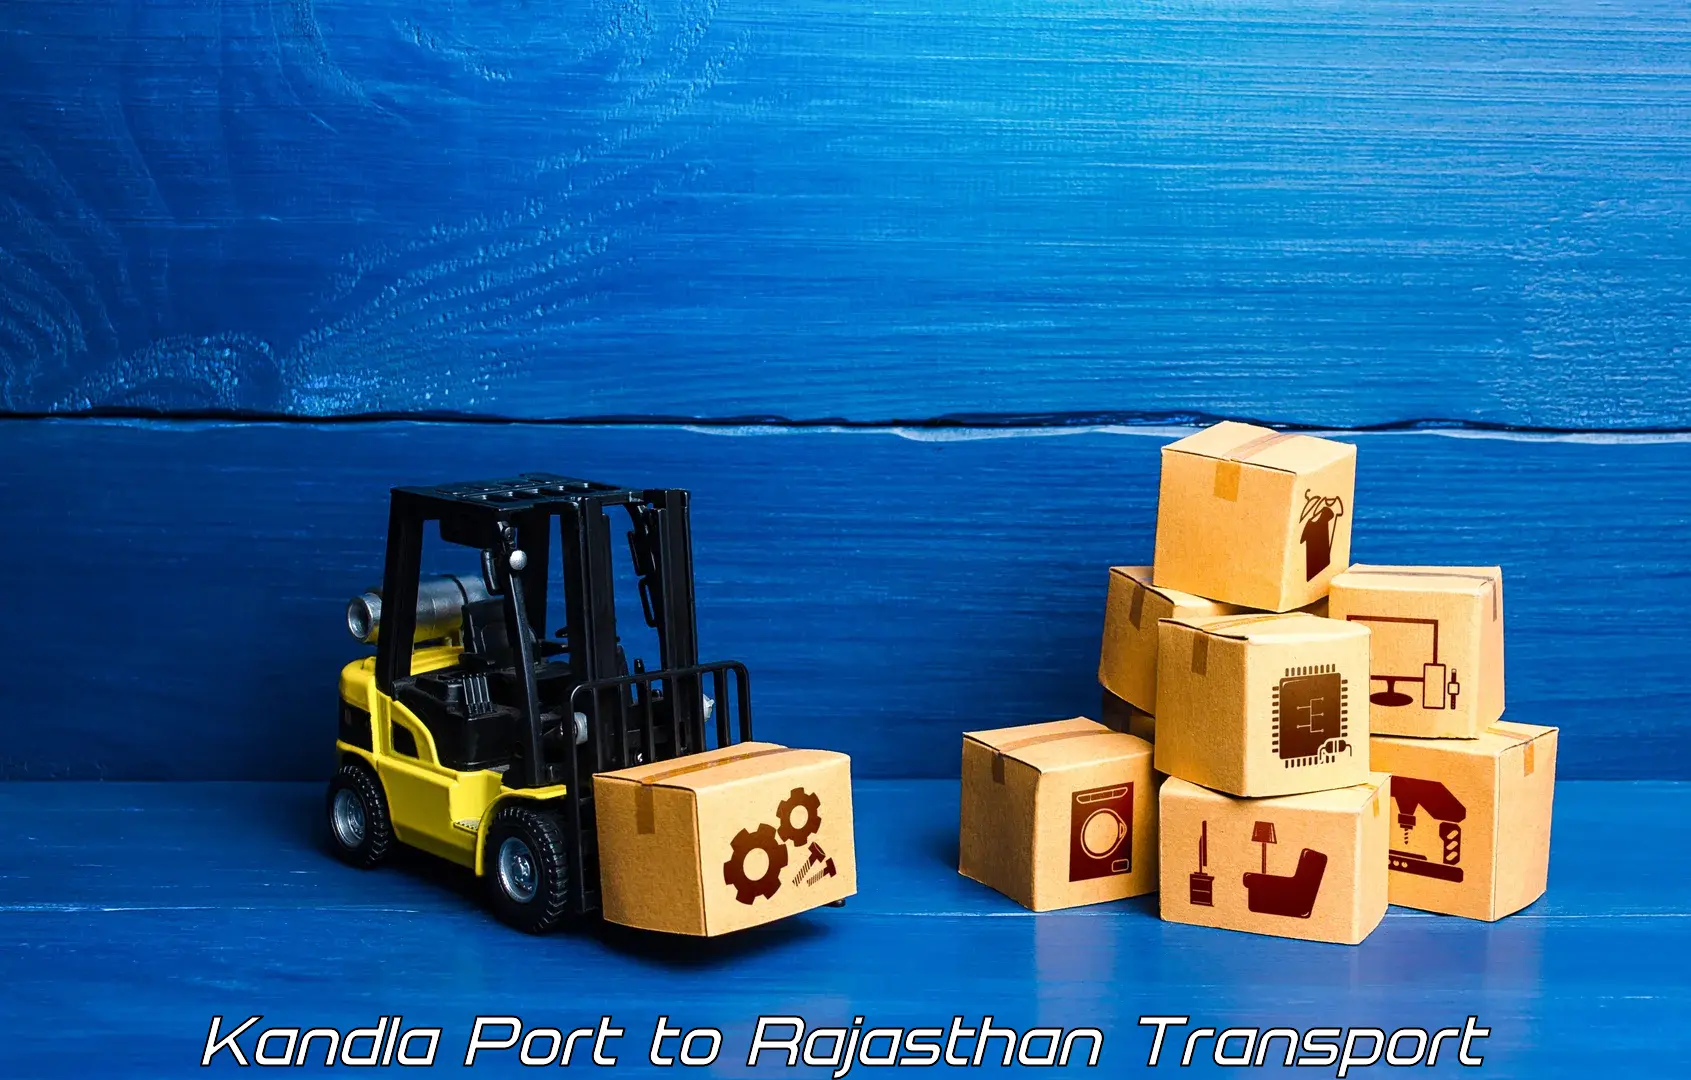 Vehicle transport services in Kandla Port to Pratapgarh Rajasthan